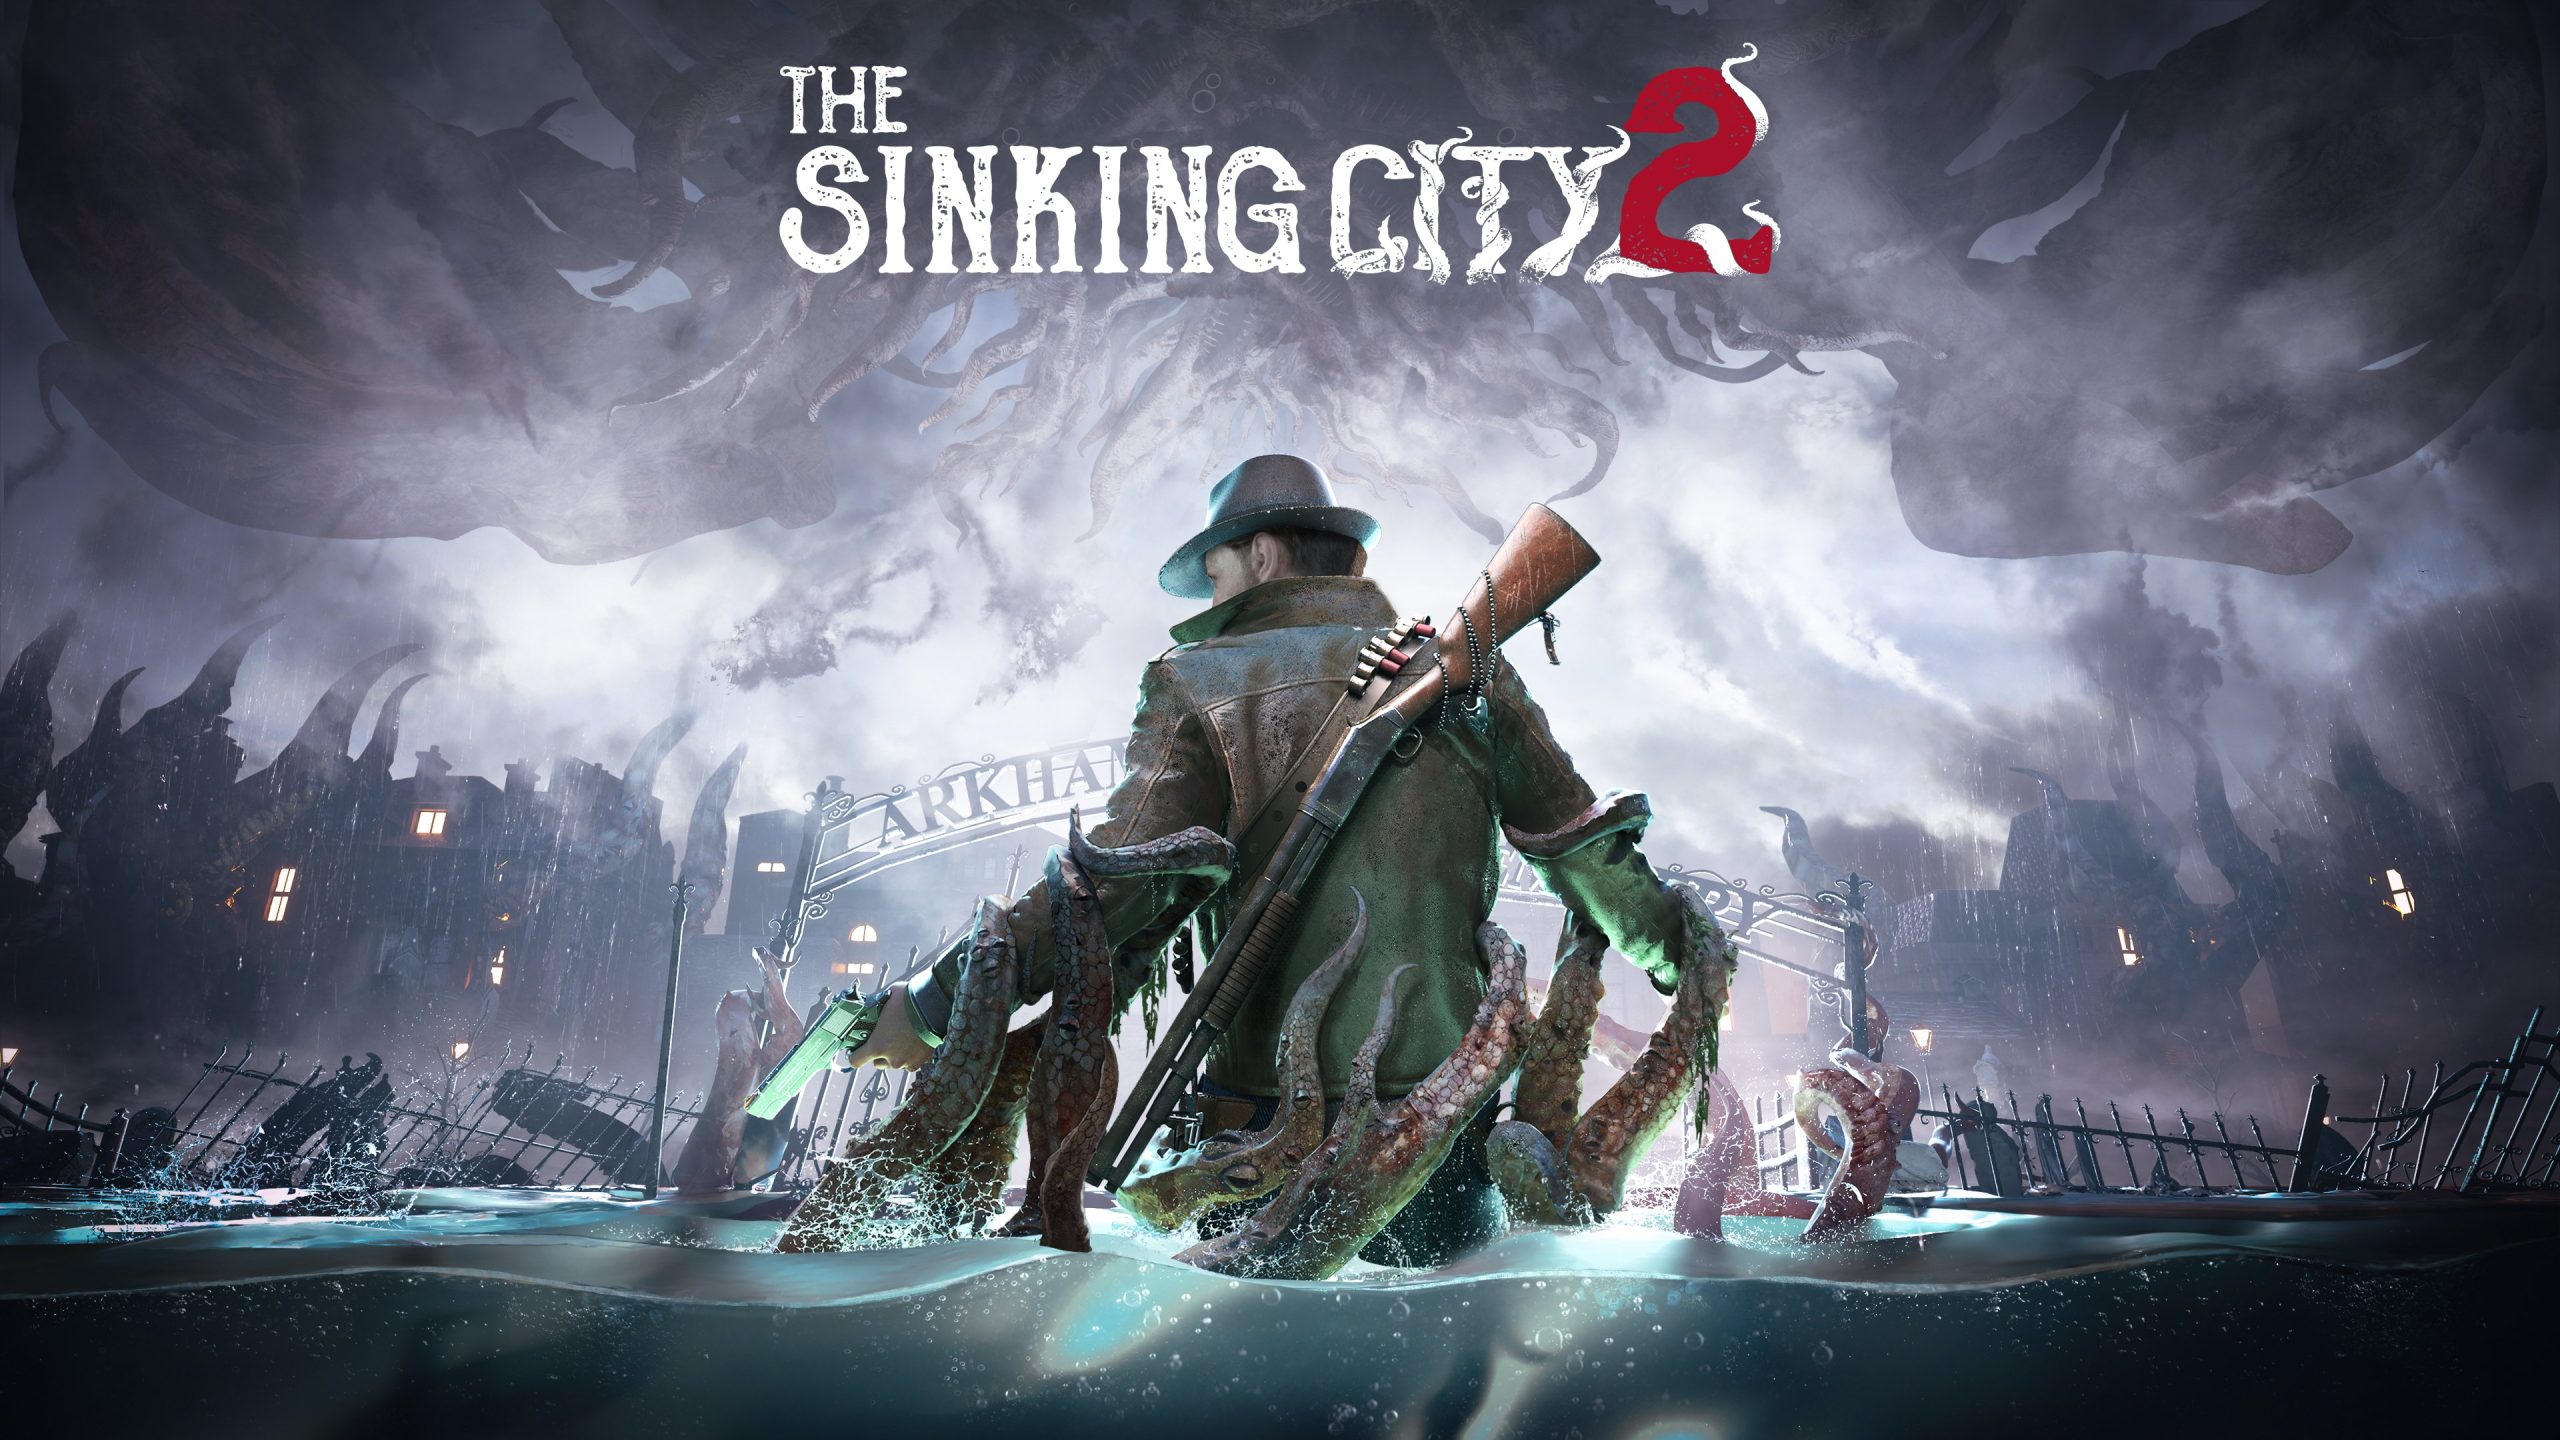 بازی The Sinking City 2 به طور رسمی معرفی شد